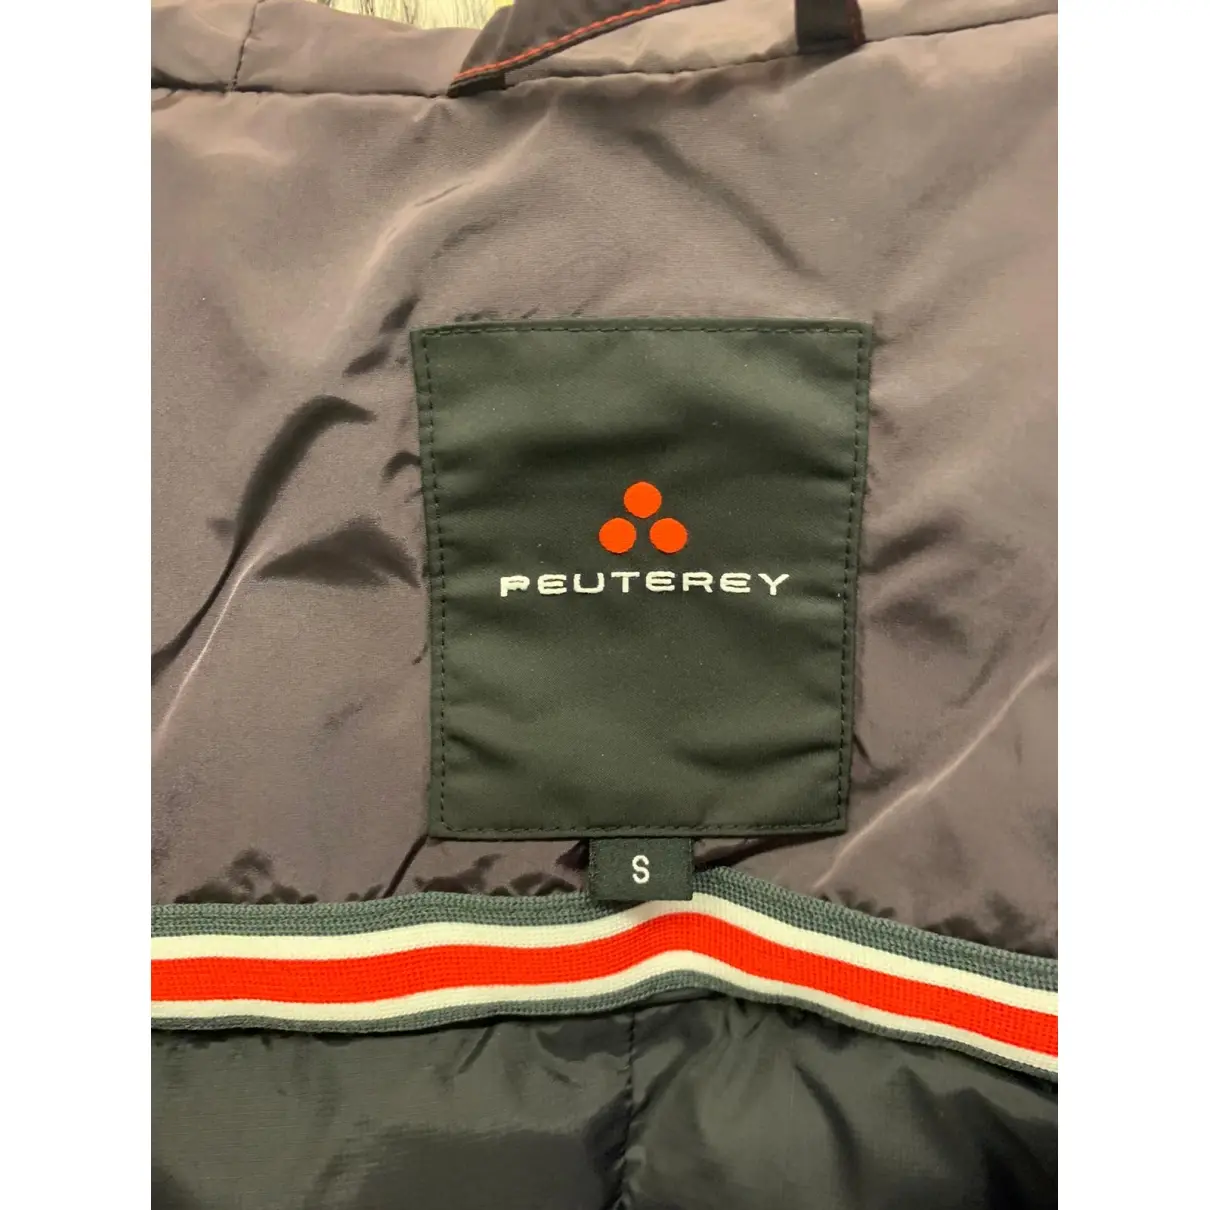 Buy Peuterey Jacket online